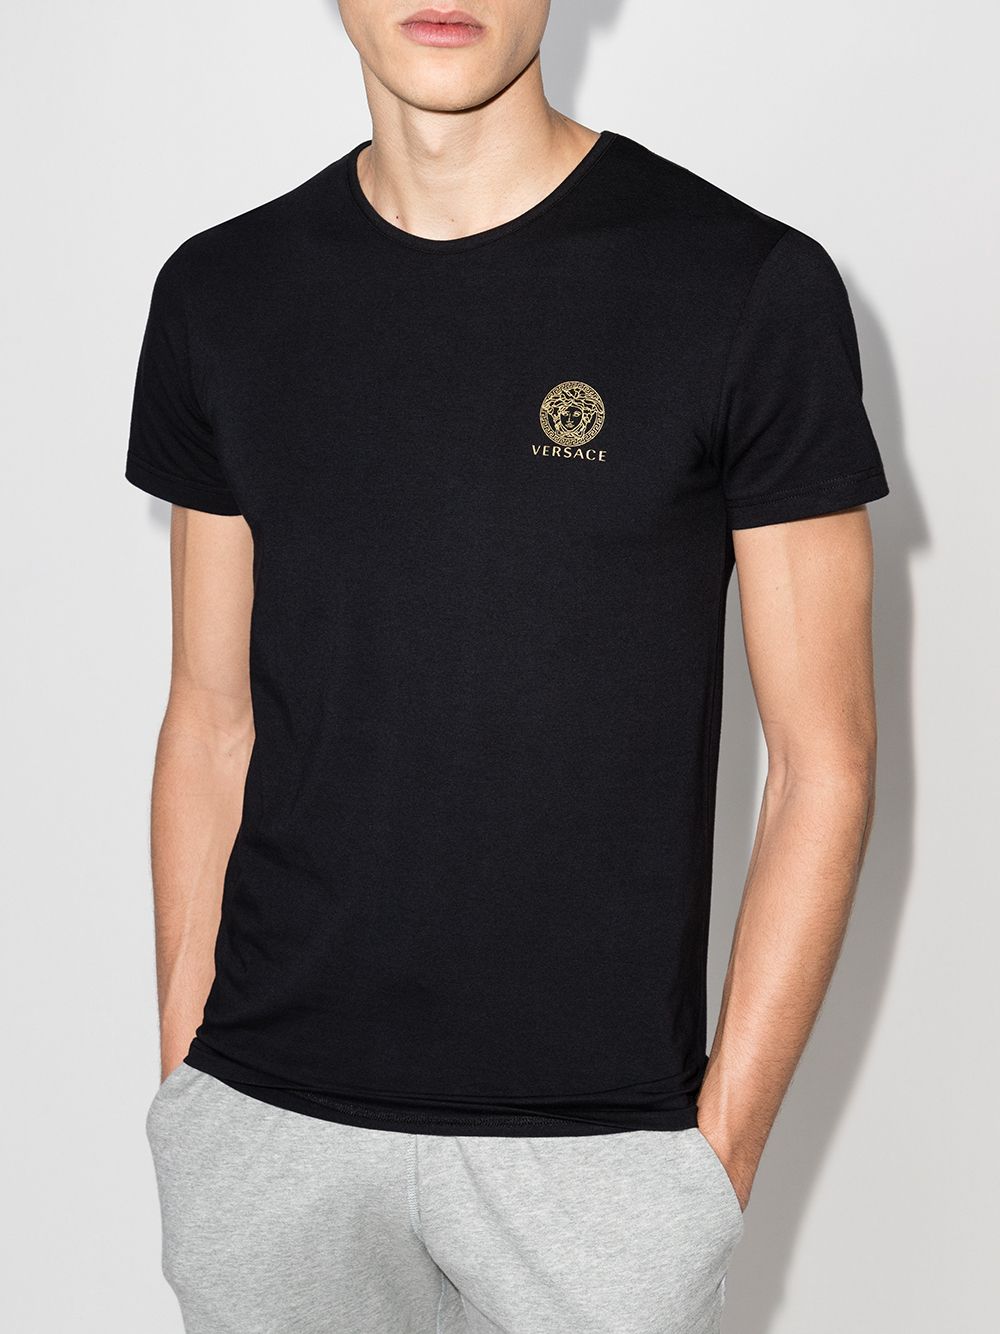 Versace T-shirt met Medusa logo - Zwart